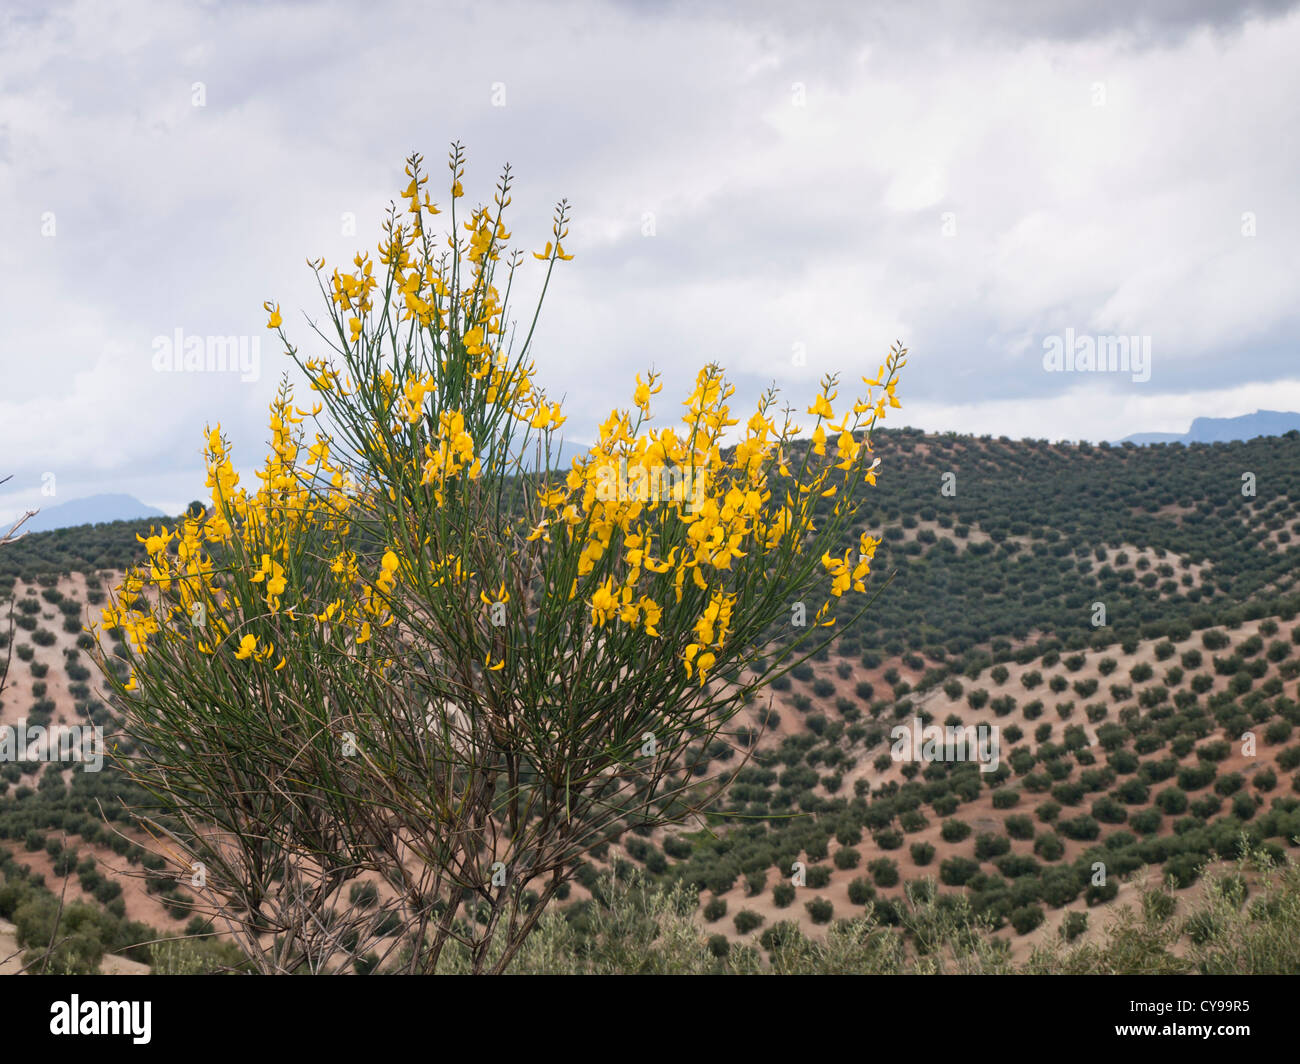 Paysage autour de Priego de Cordoba en Andalousie, oliviers, balai espagnol, probablement Catégorie : Augmente Melangez junceum, en premier plan Banque D'Images